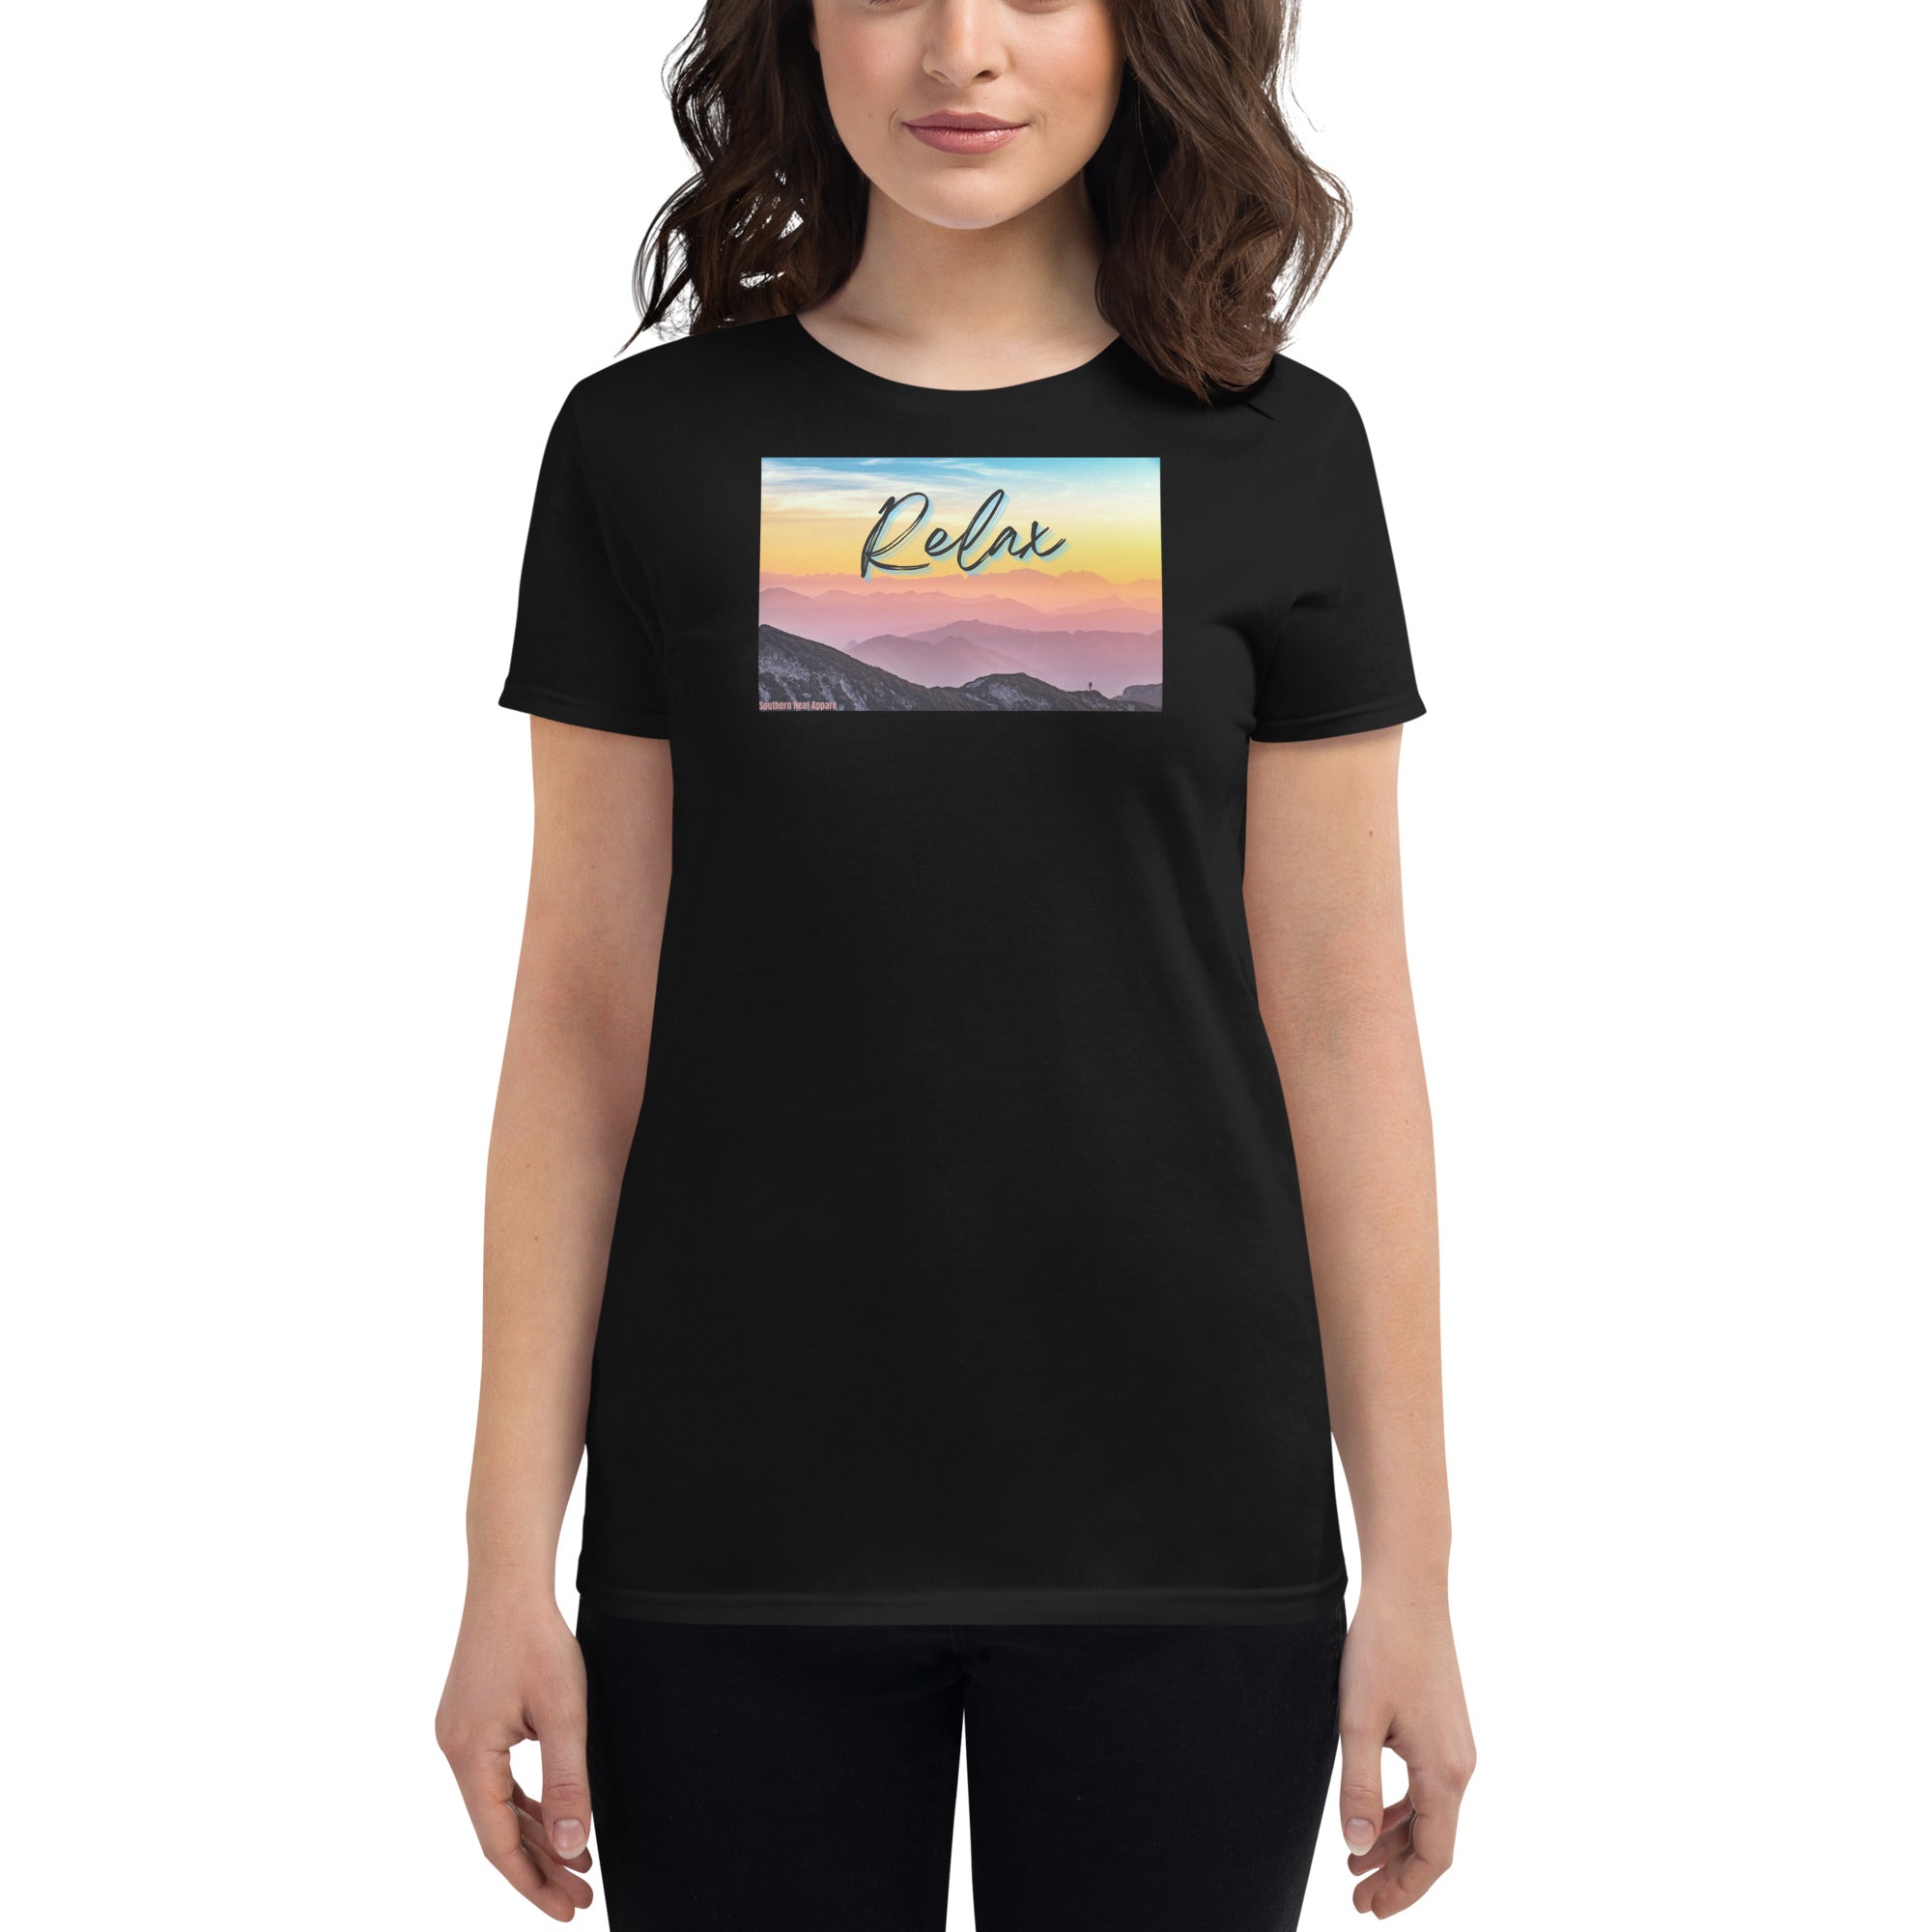 Relax-Women's short sleeve t-shirt